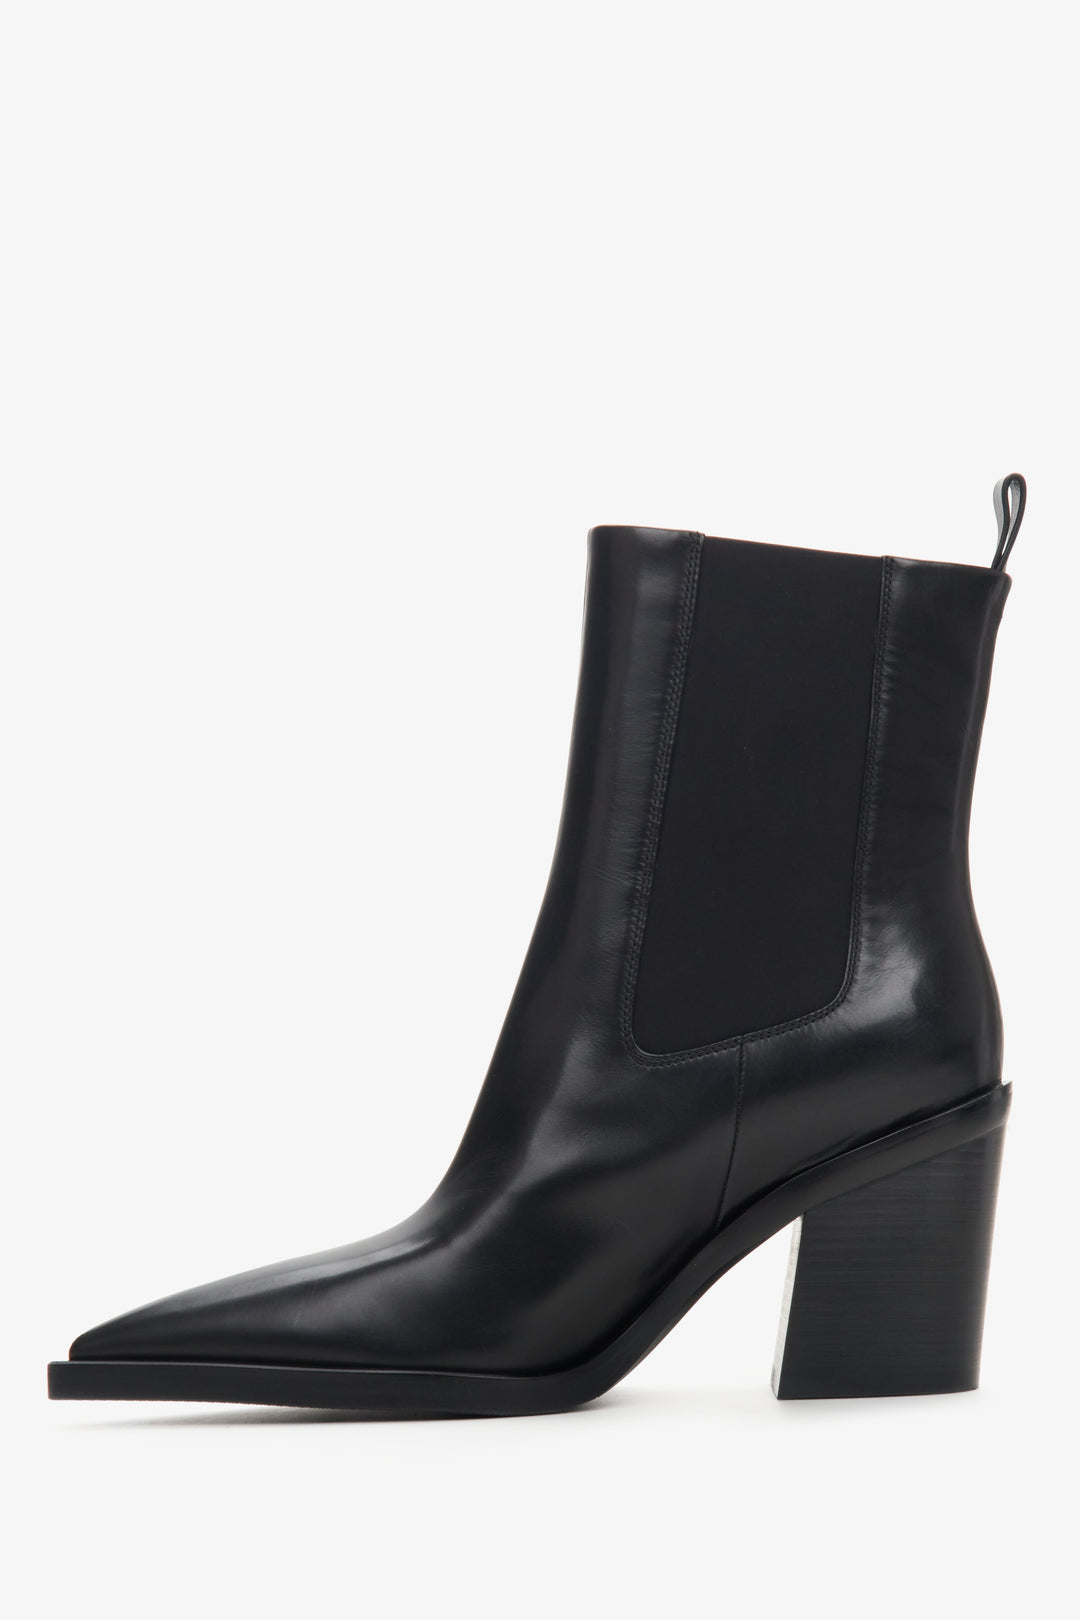 Women's black leather cowboy boots Estro - shoe profile.